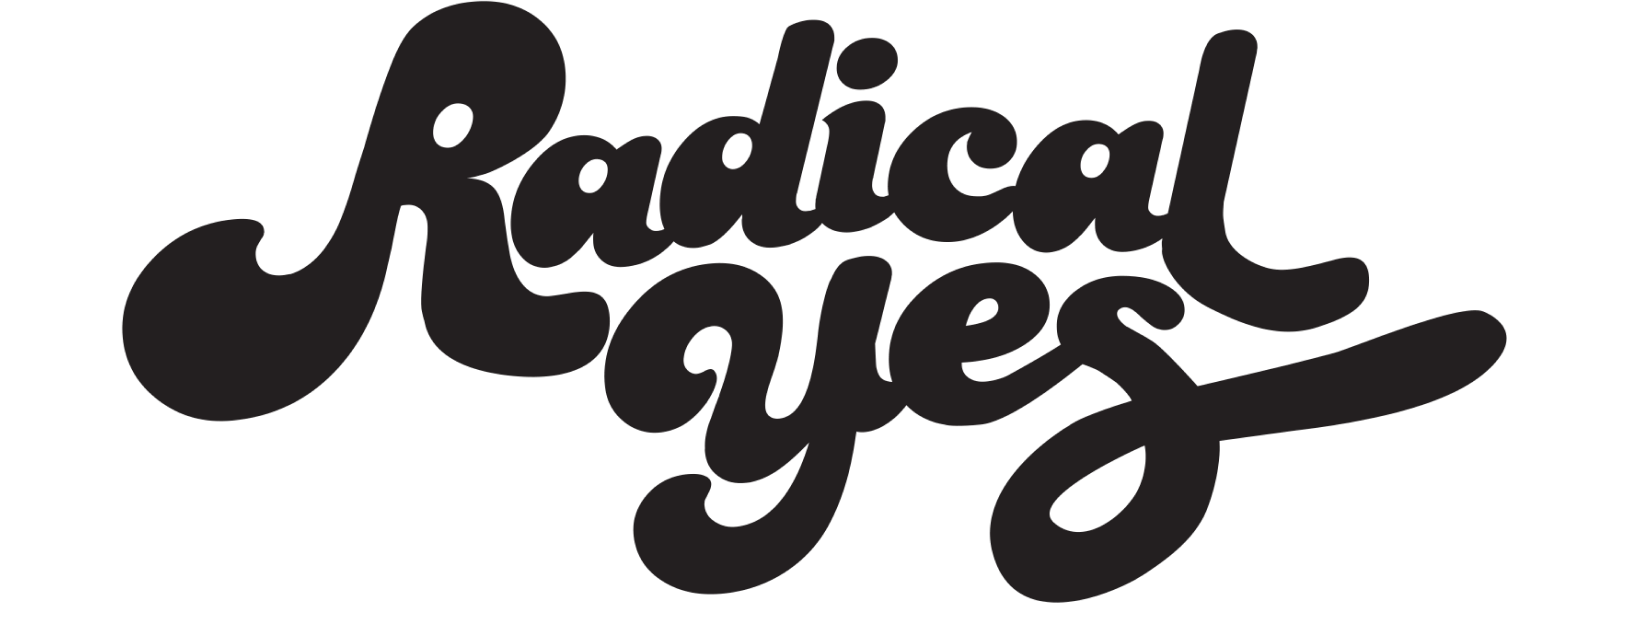 Radical Yes! logo